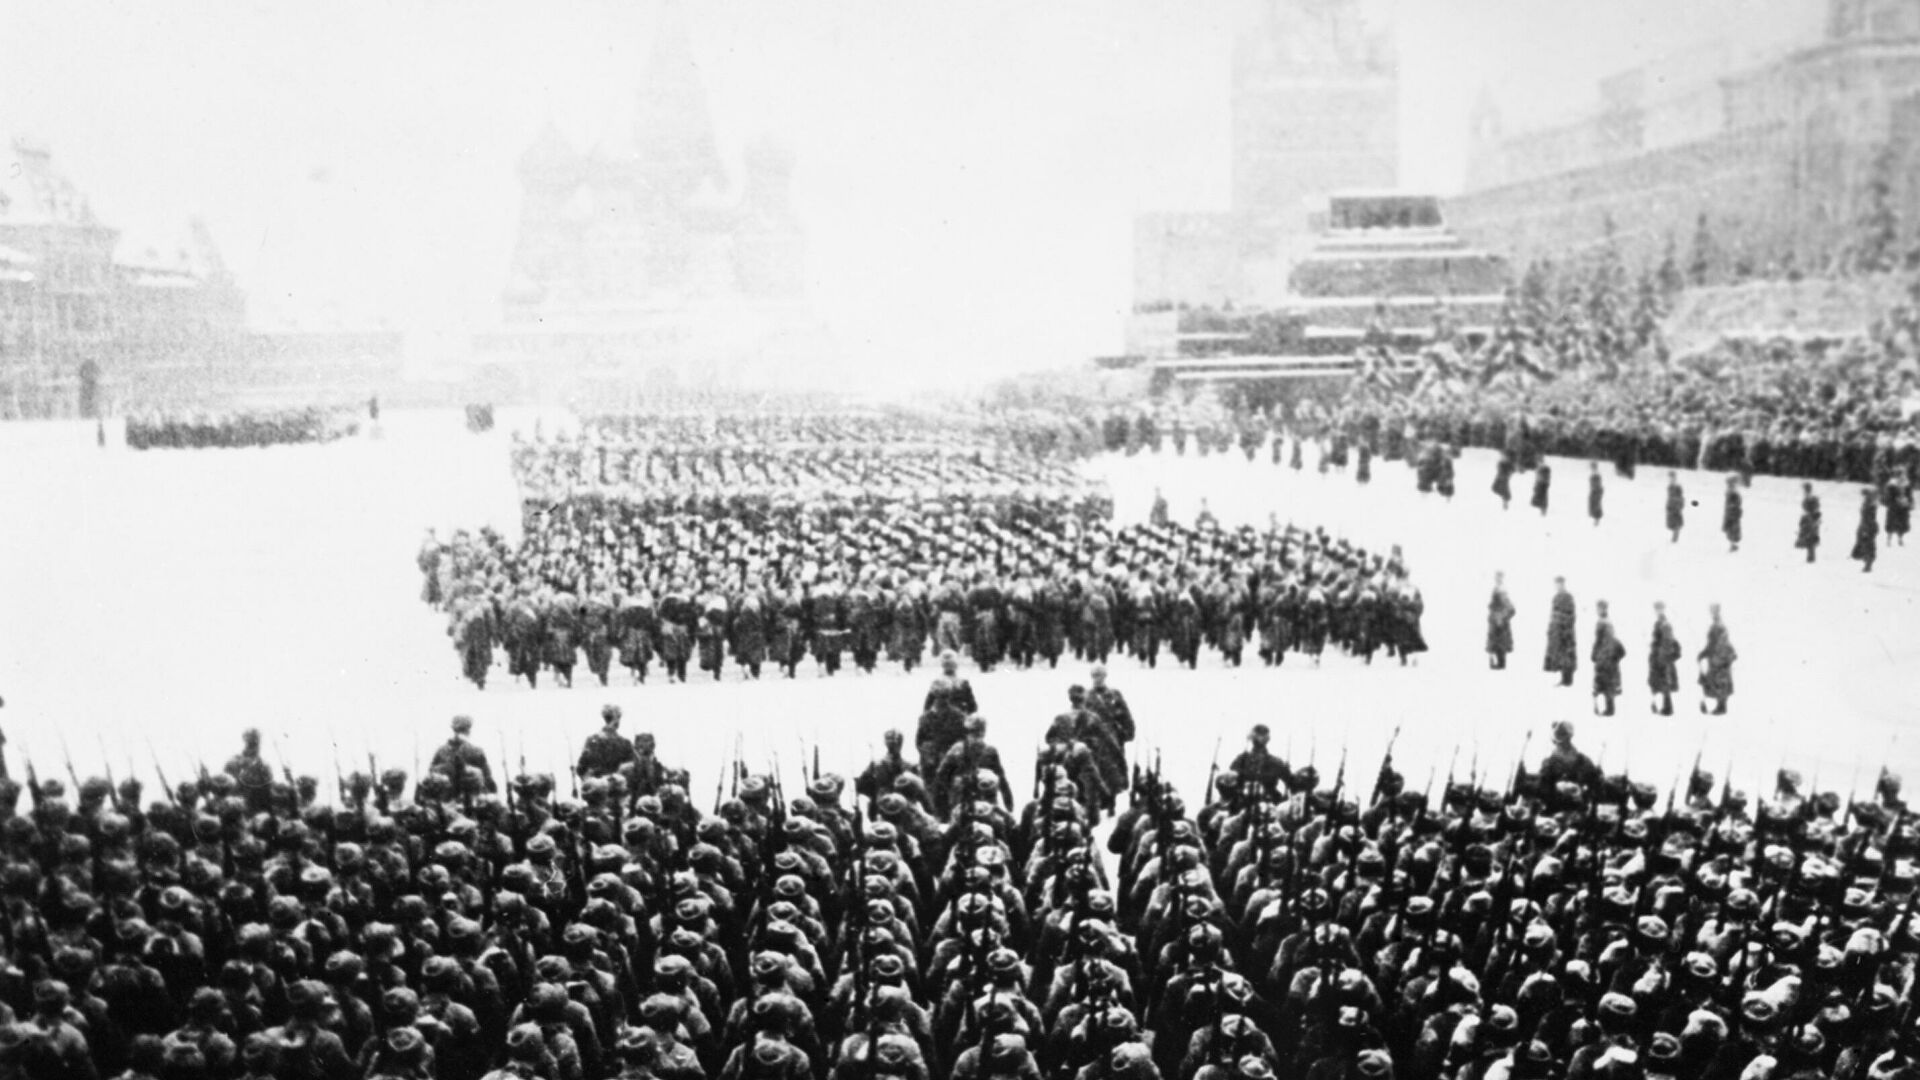 Красная площадь в 1941 году